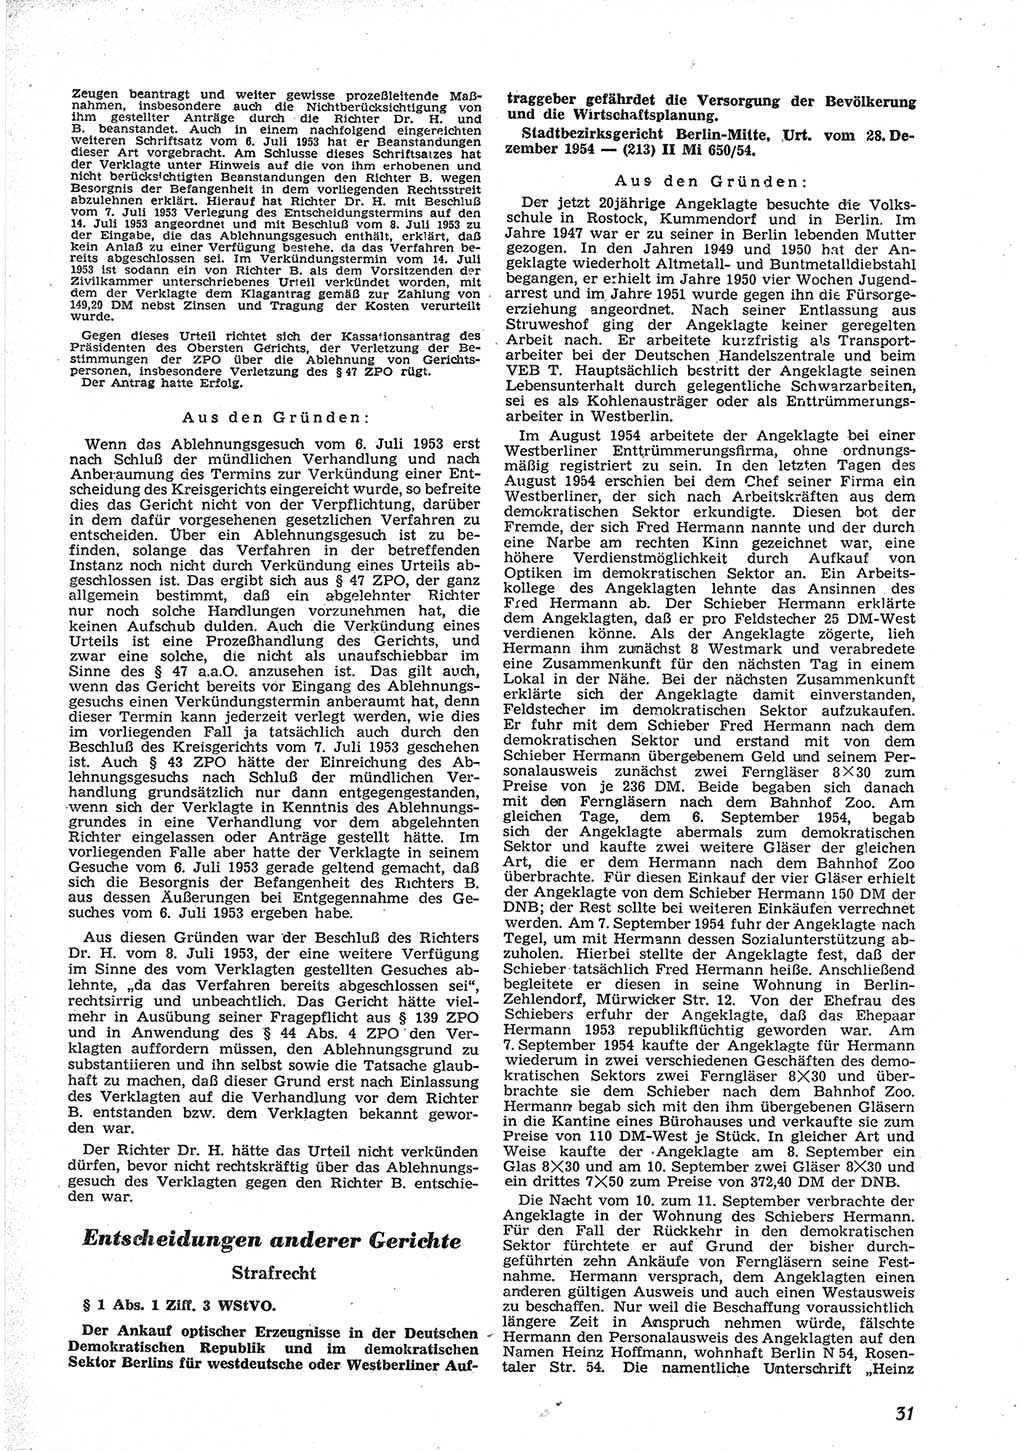 Neue Justiz (NJ), Zeitschrift für Recht und Rechtswissenschaft [Deutsche Demokratische Republik (DDR)], 9. Jahrgang 1955, Seite 31 (NJ DDR 1955, S. 31)